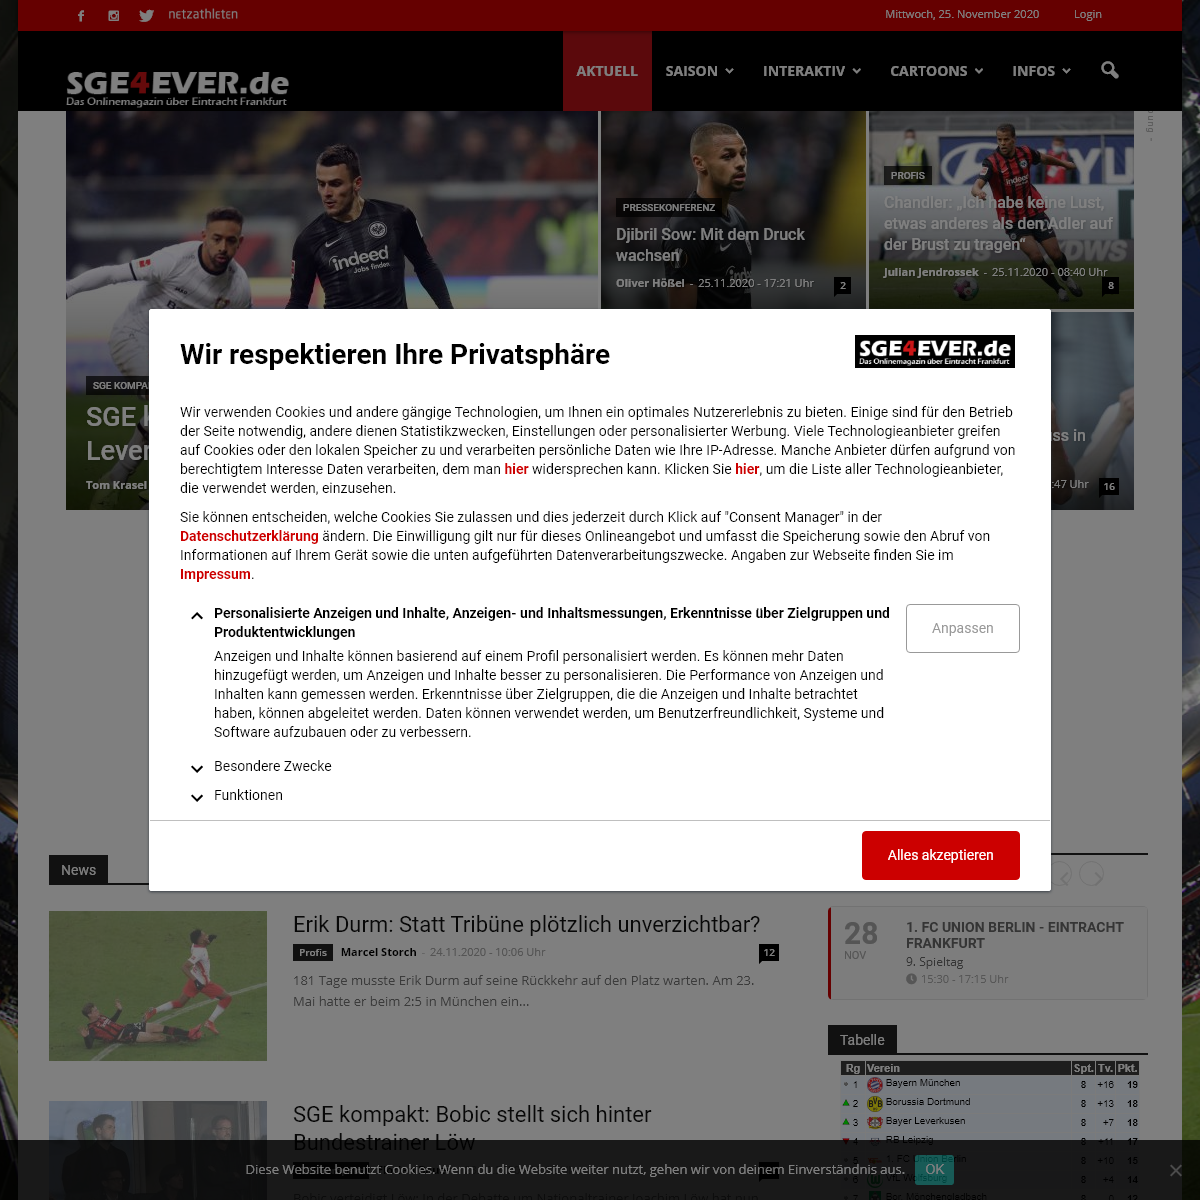 SGE4EVER.de - Das Onlinemagazin Ã¼ber Eintracht Frankfurt - Aktuelle News und Diskussionen rund um den FuÃŸball-Bundesligisten E